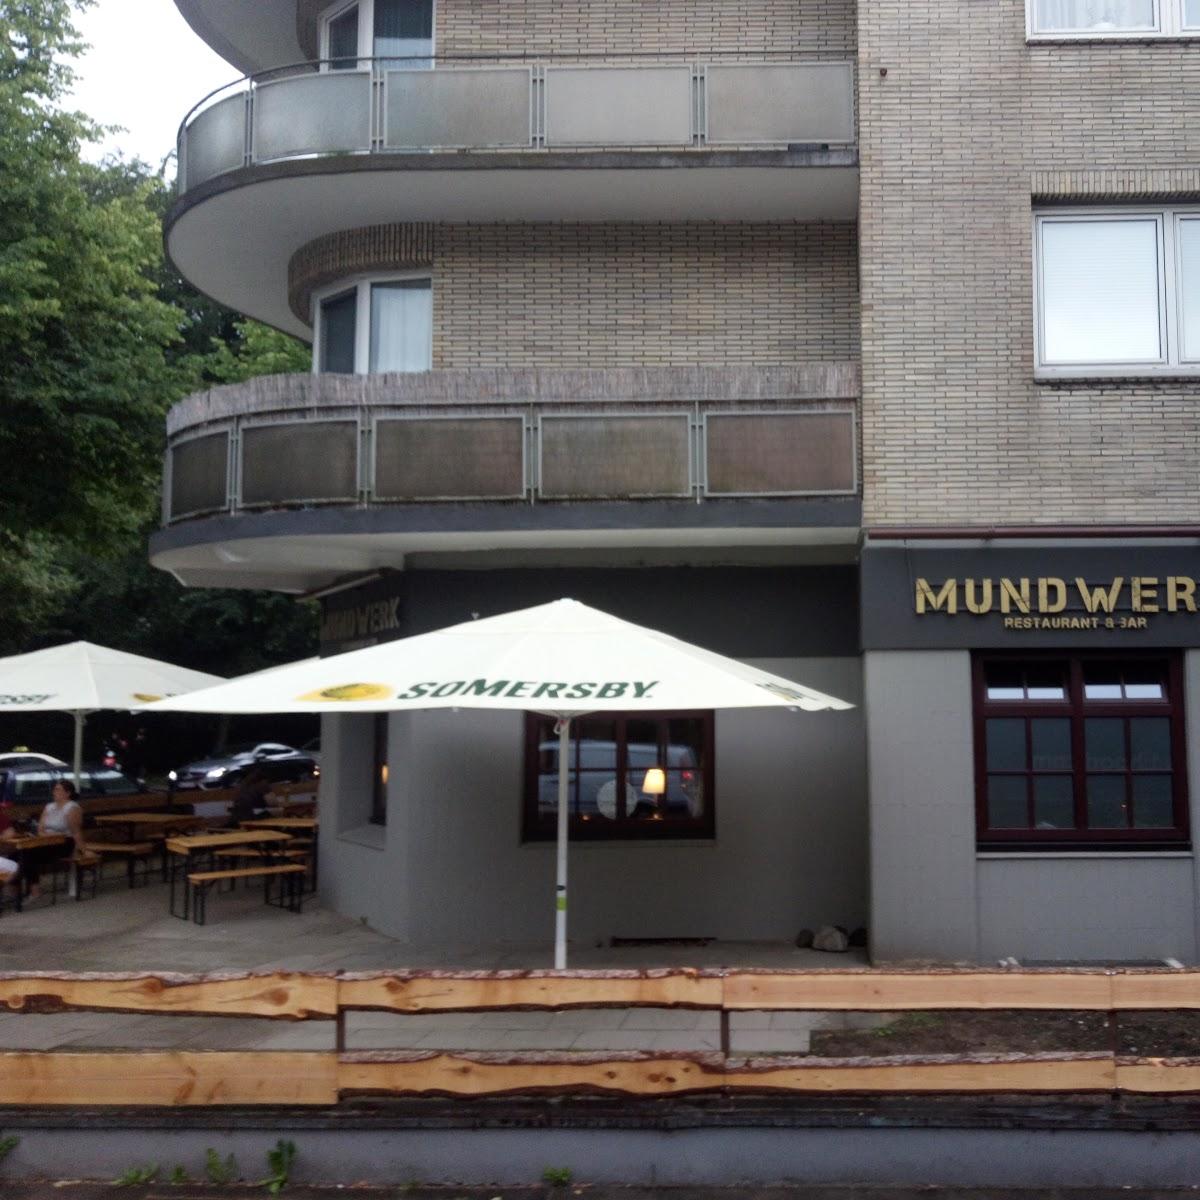 Restaurant "Mundfabrik" in Hamburg